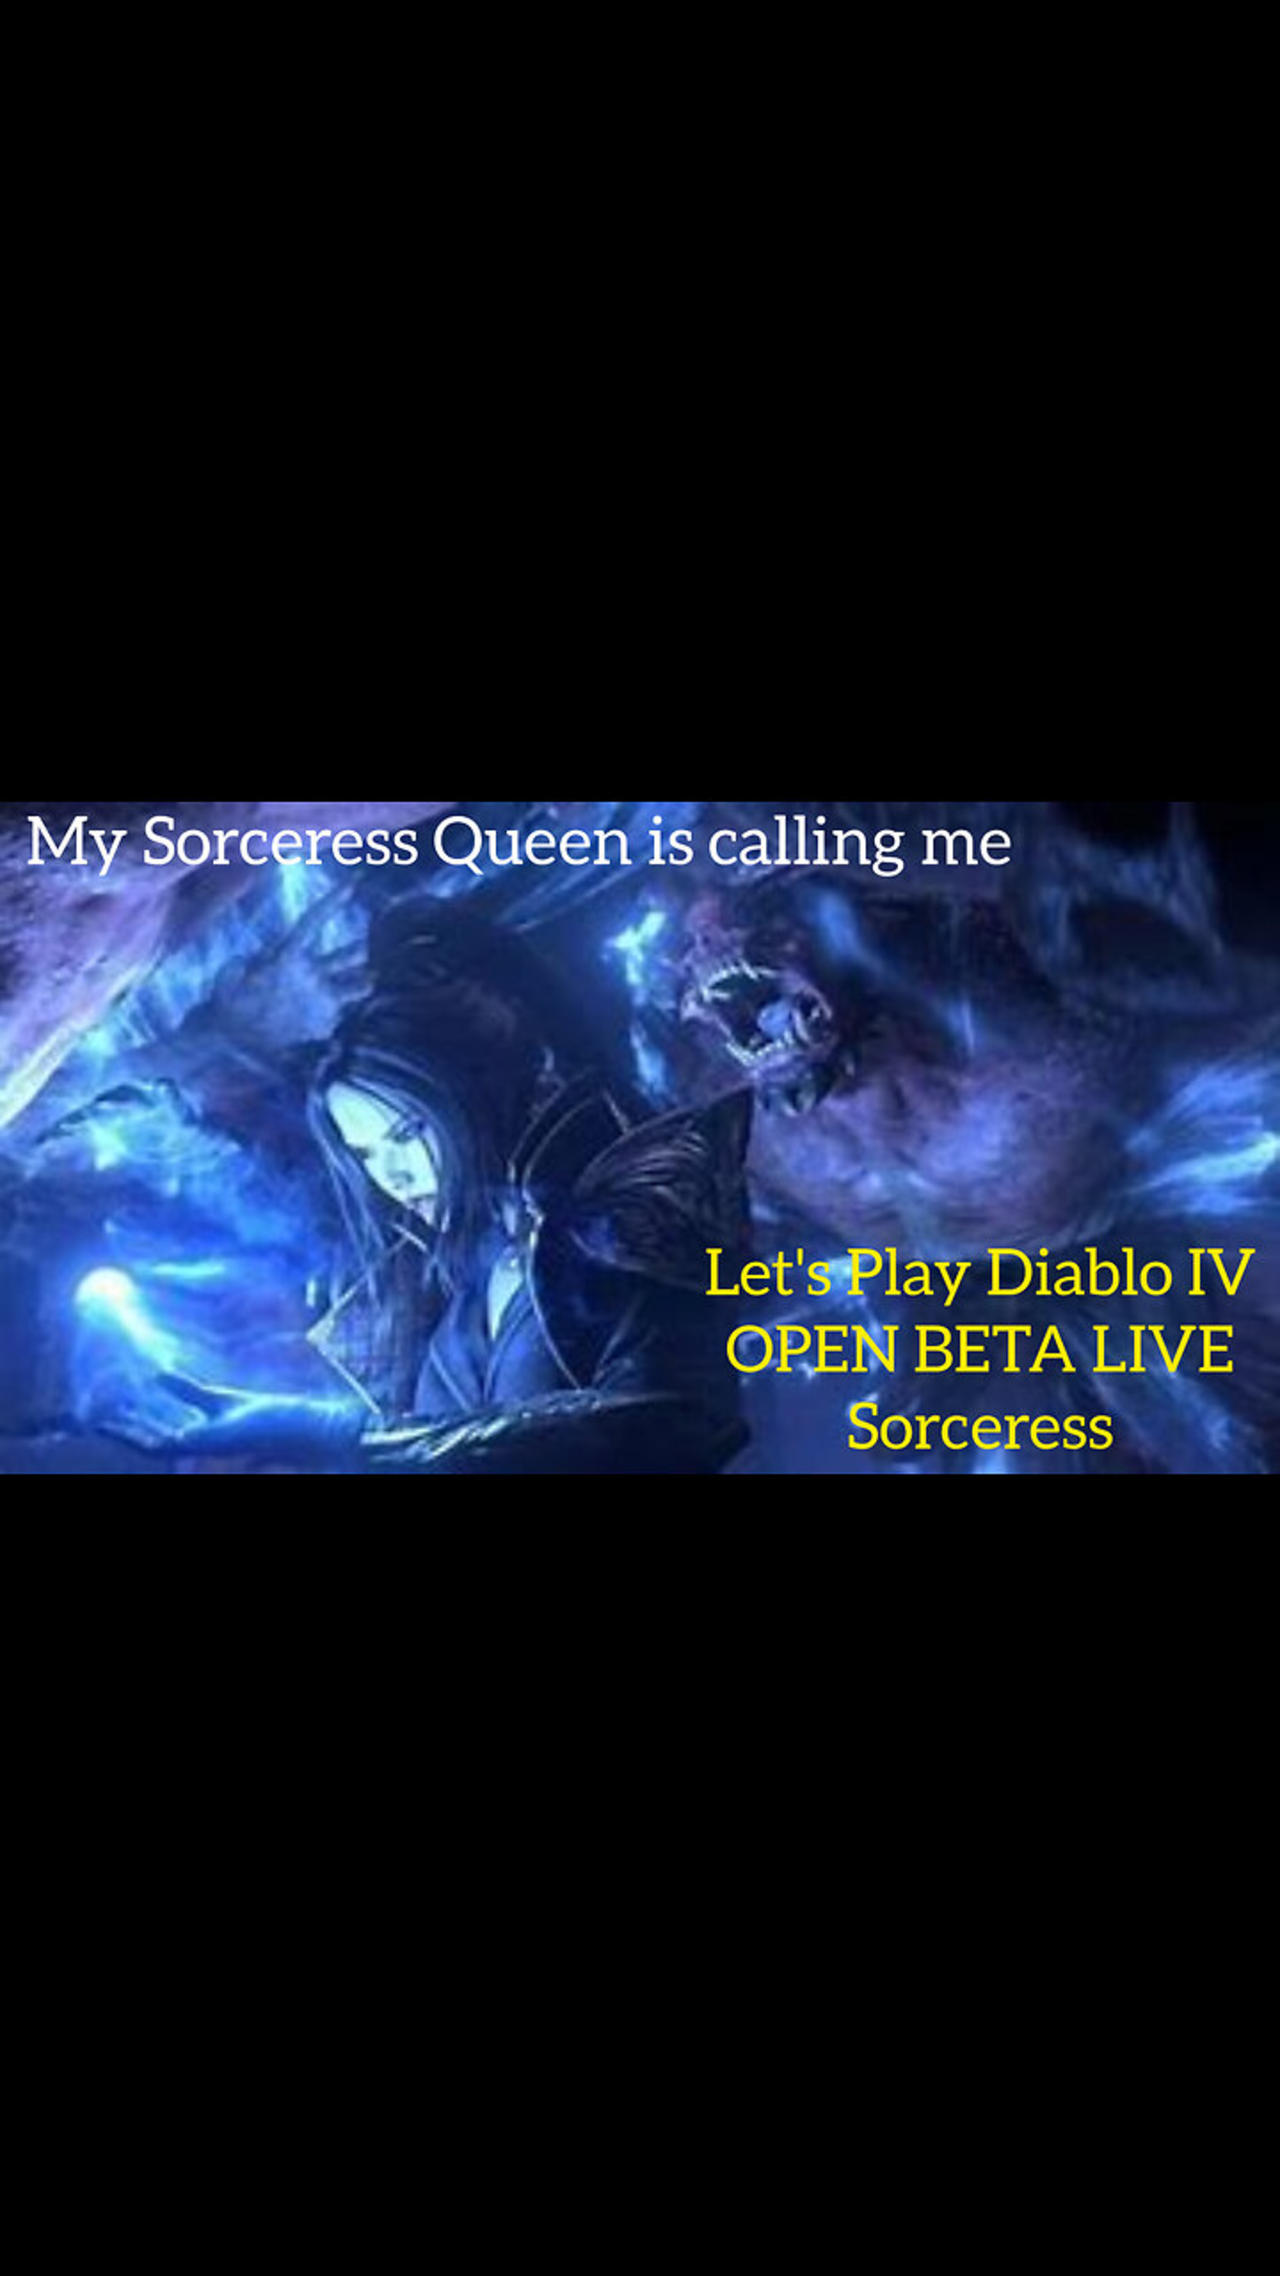 Let's Play DIablo IV Open Beta Live Part 3 - My Sorceress Queen is calling me